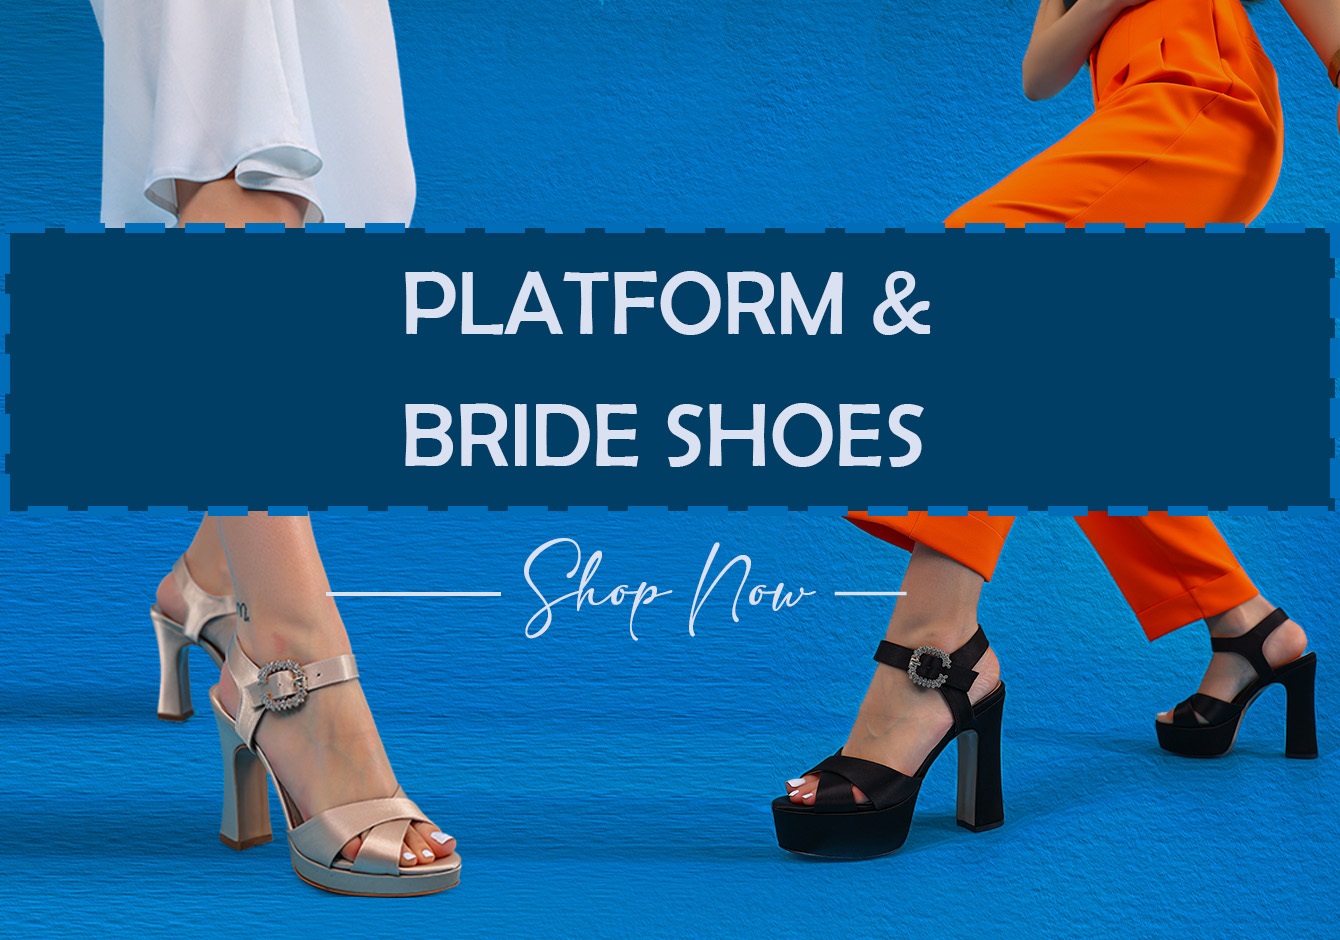 Bride Shoes, Platform Shoes